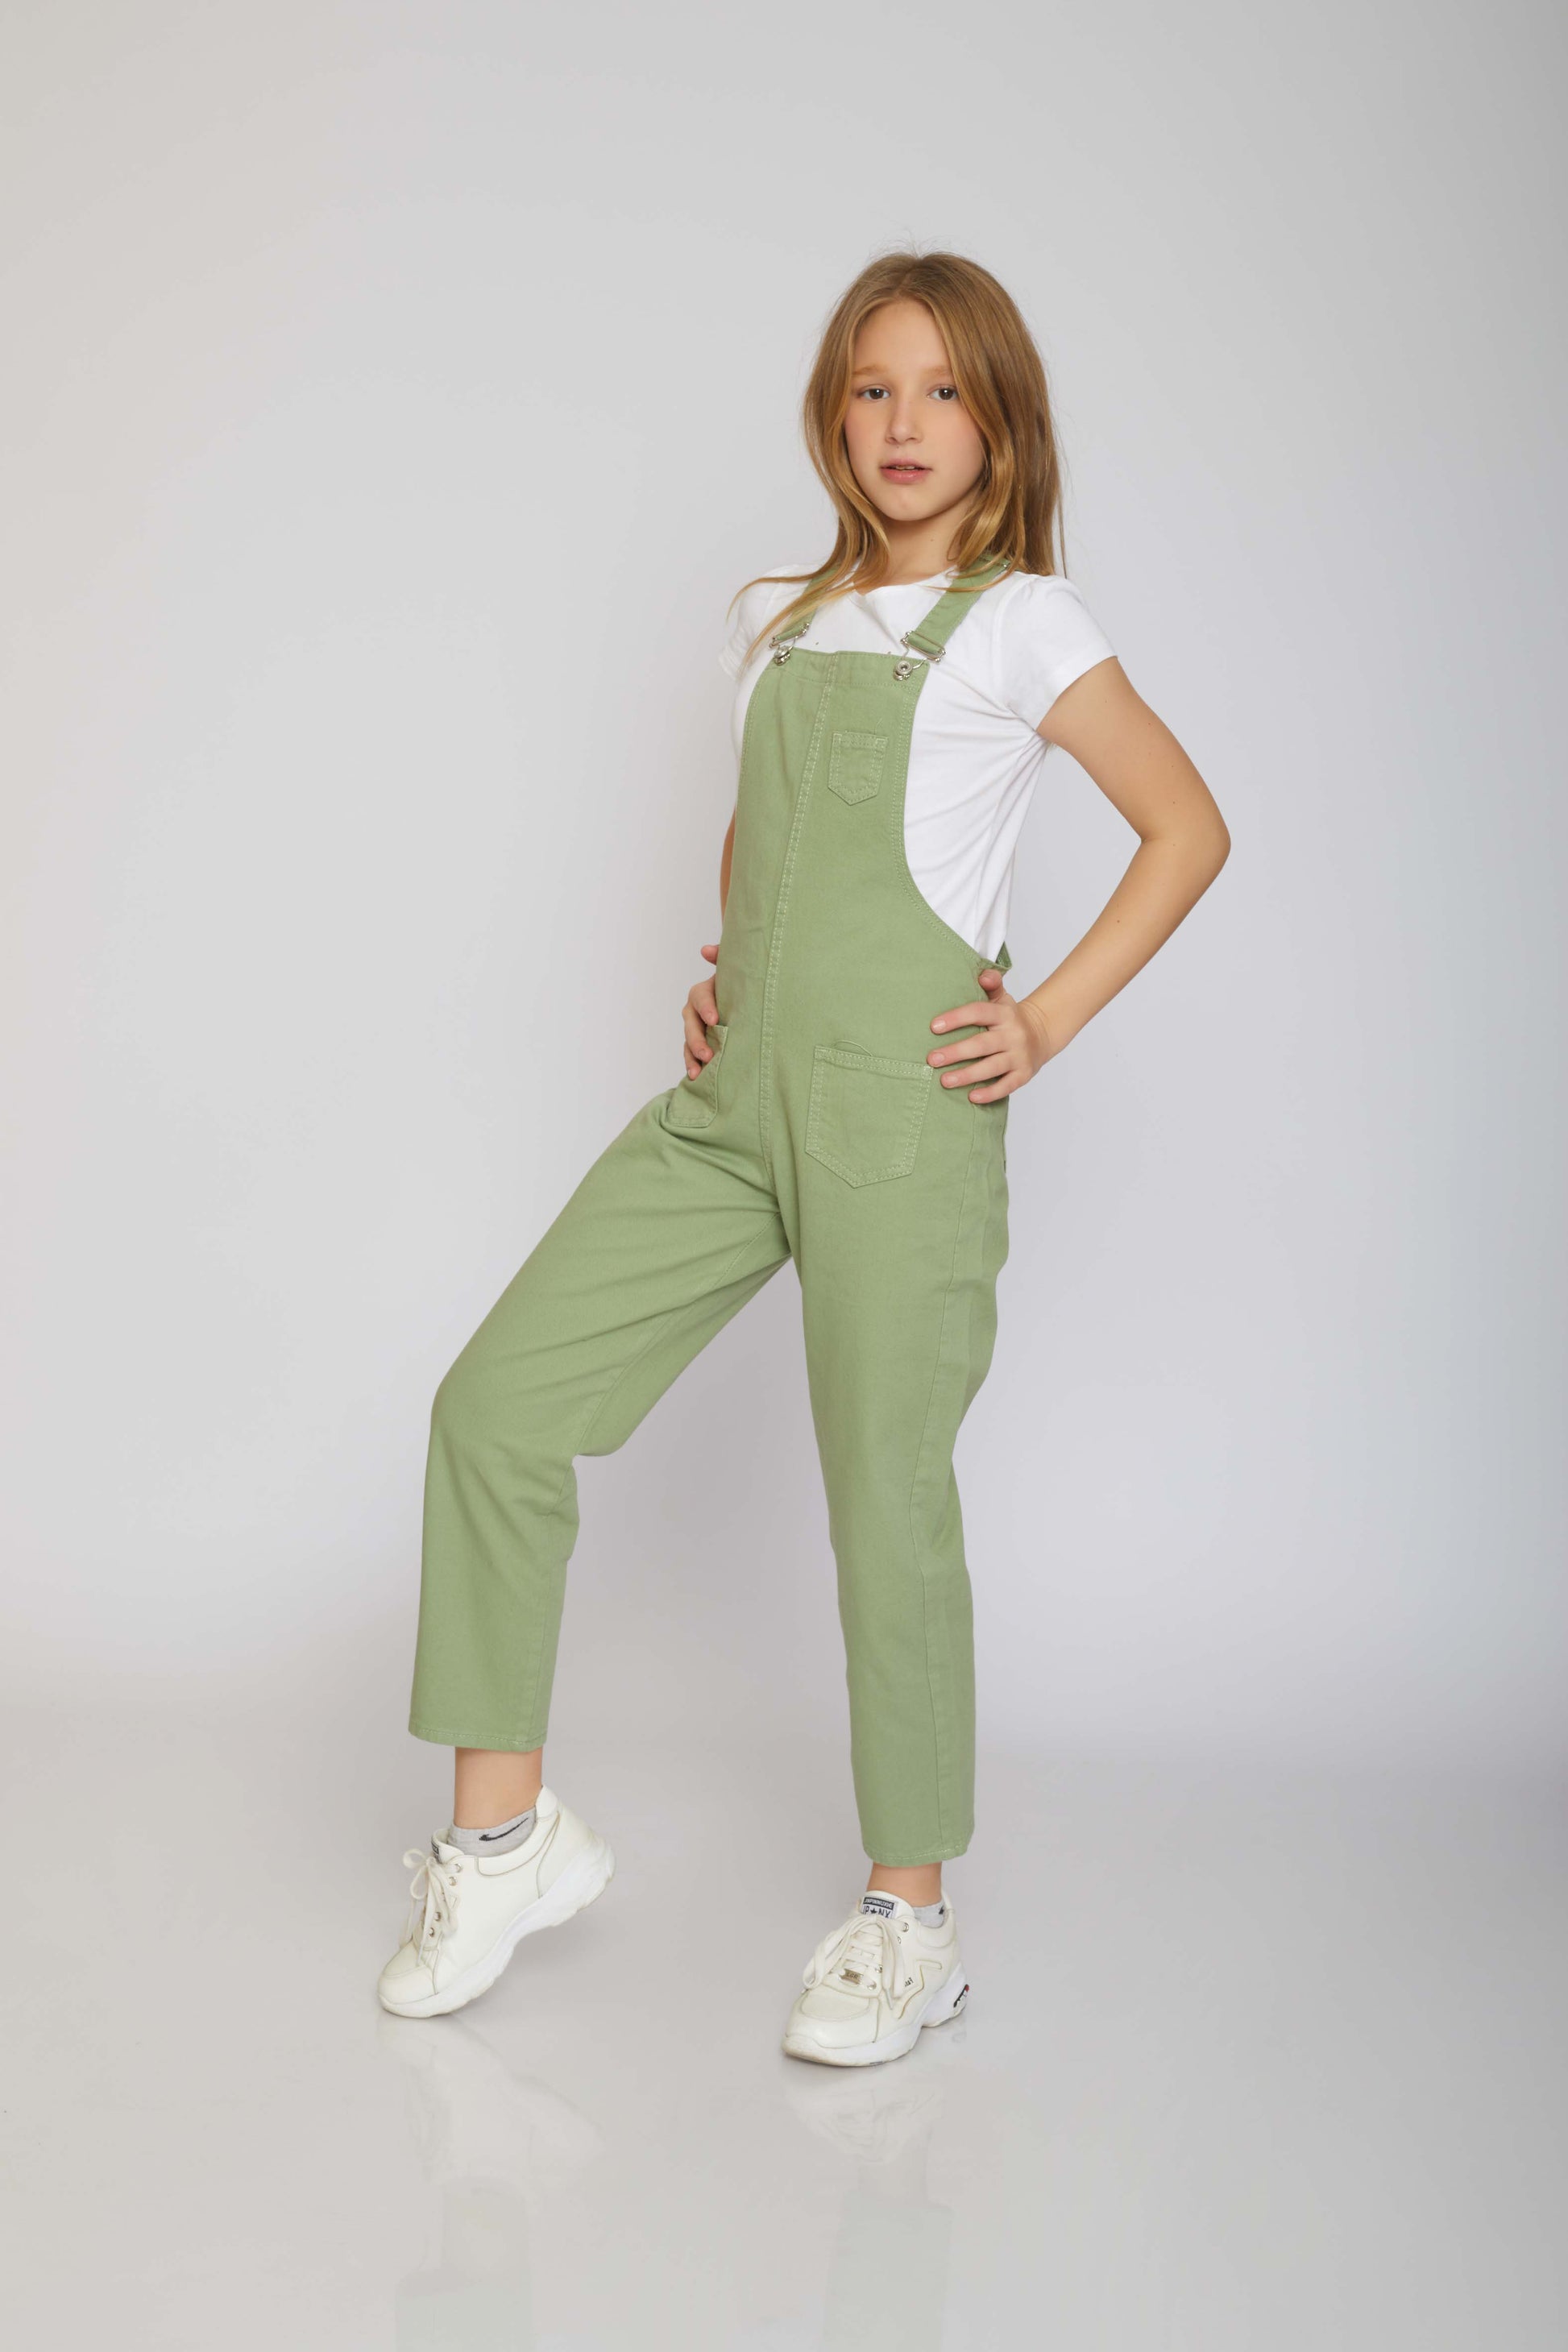 dj gabardine jumpsuit 5 pockets - kids - mint green